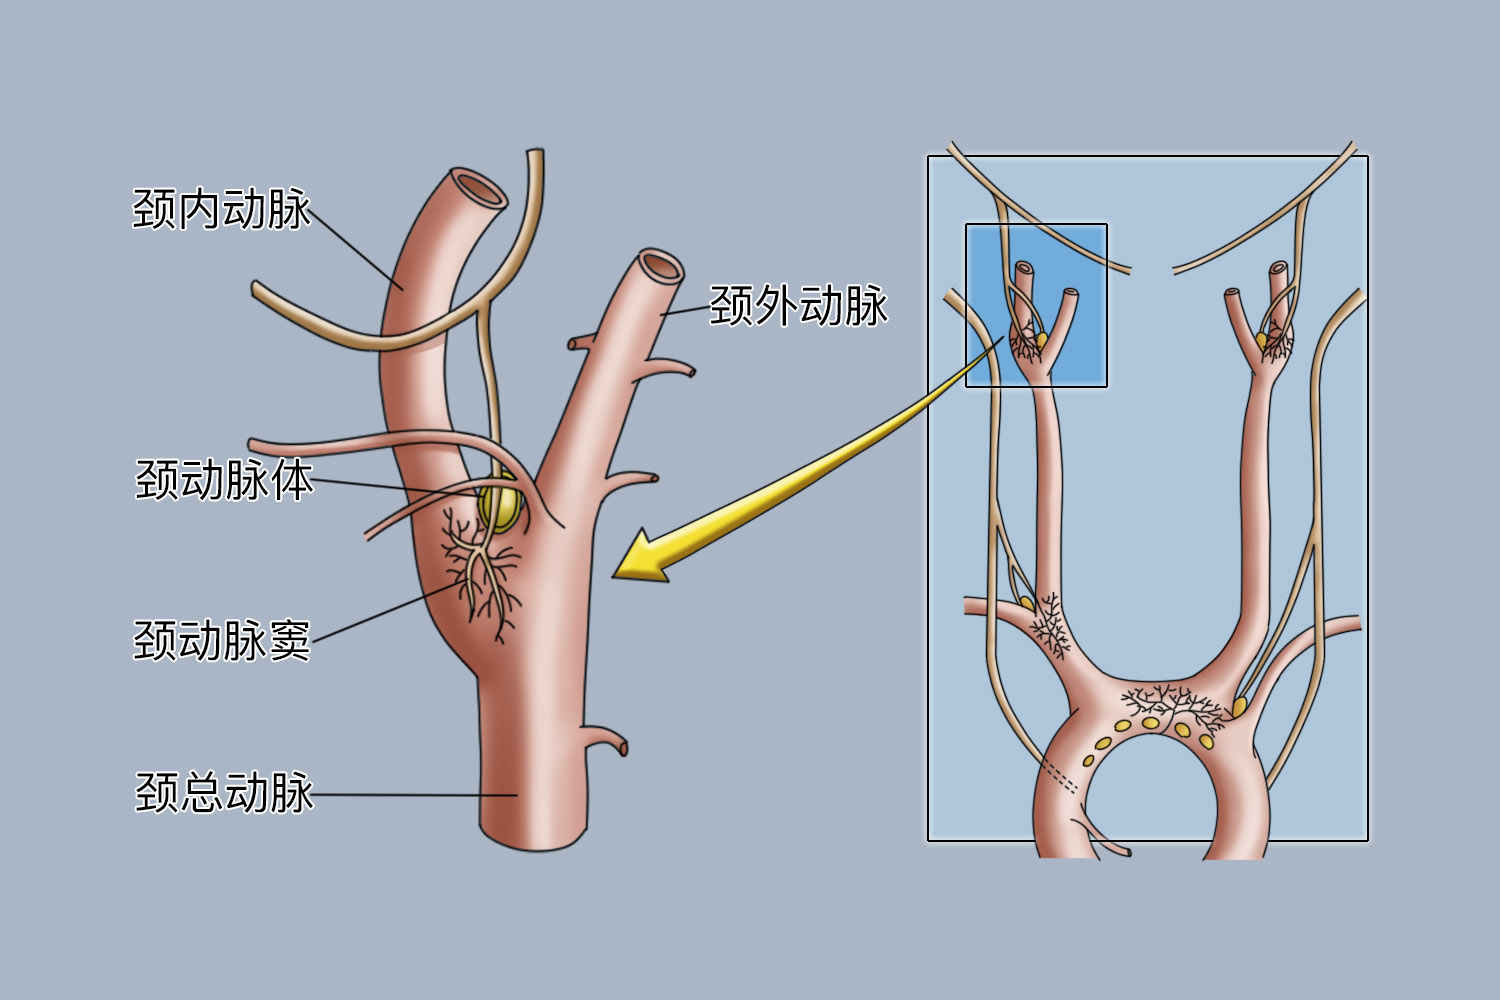 颈动脉体和颈动脉窦解剖图